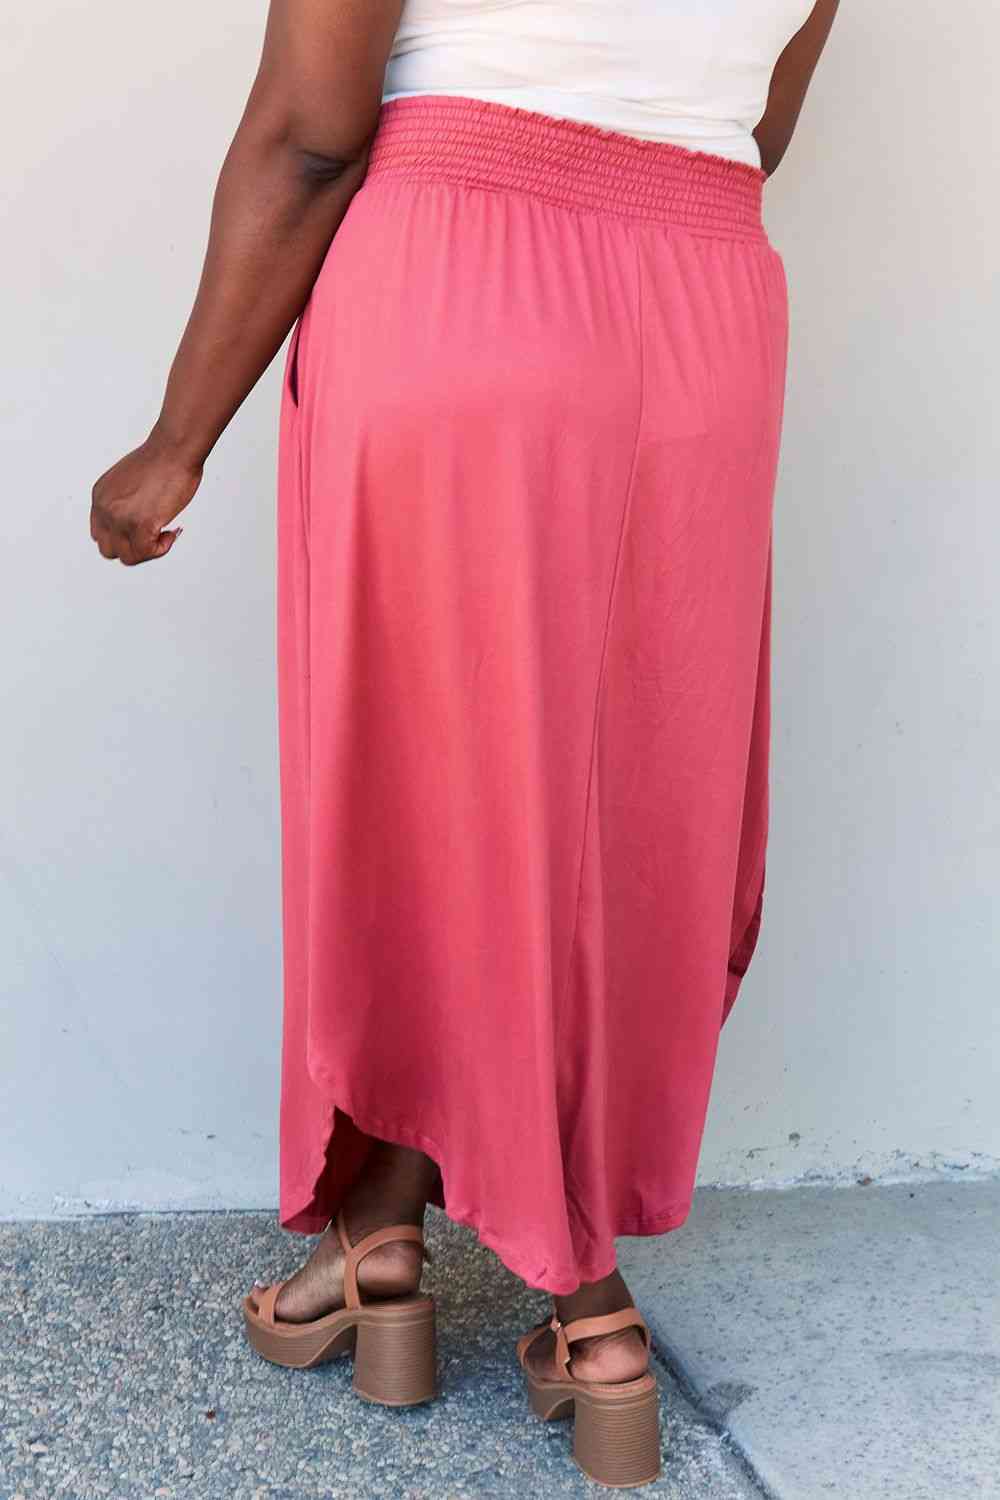 Falda larga Doublju Comfort Princess de tamaño completo con cintura alta y dobladillo redondo en rosa intenso